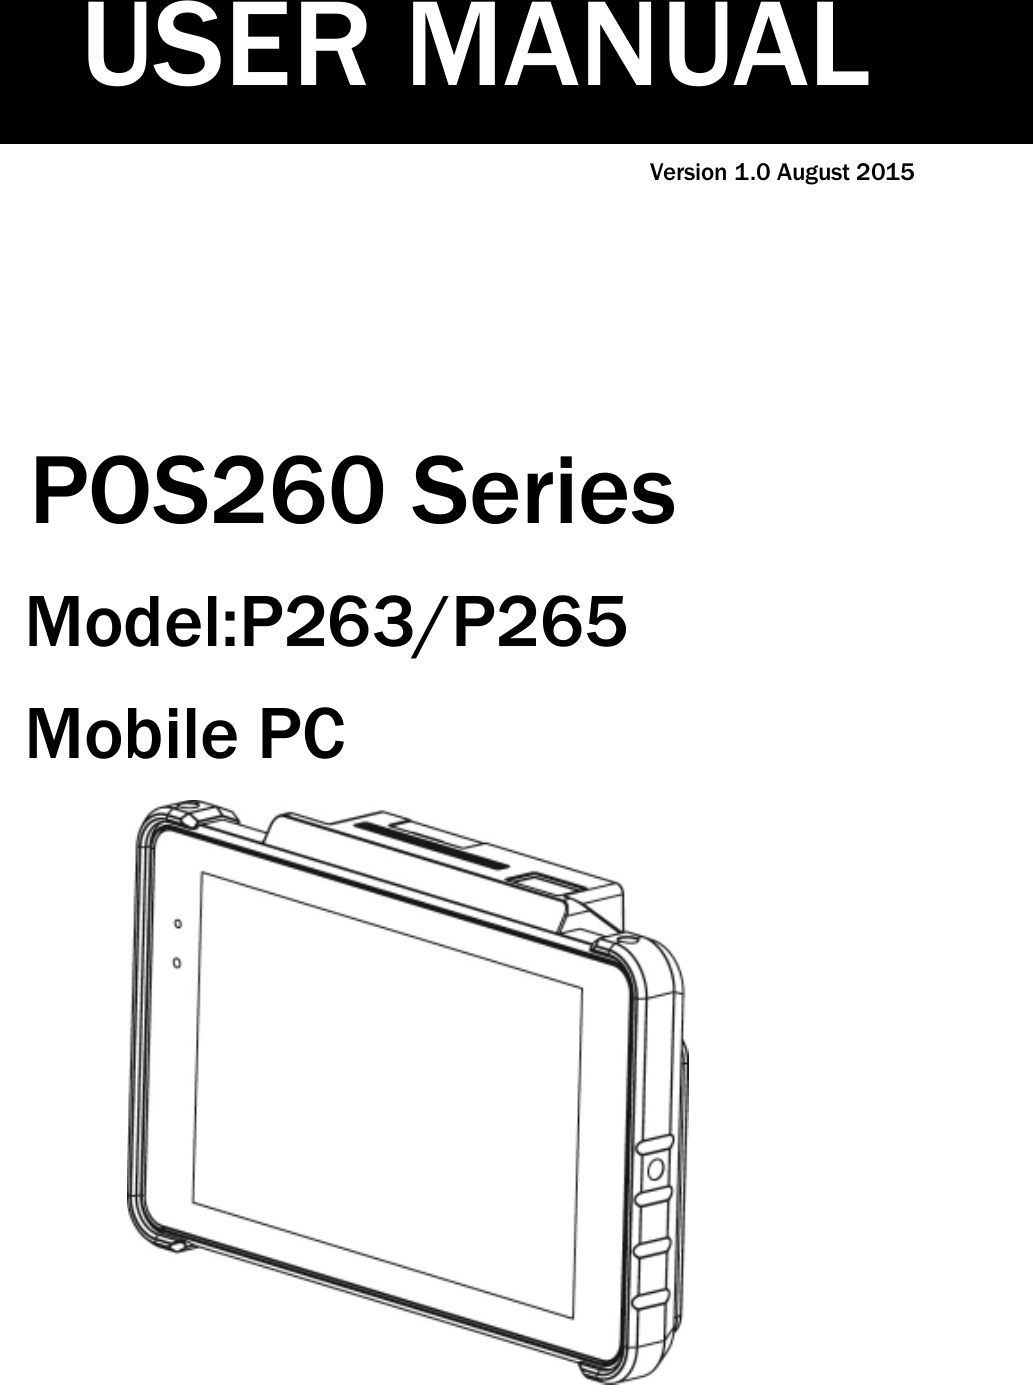 Version 1.0 August 2015POS260 SeriesModel:P263/P265Mobile PCUSER MANUAL